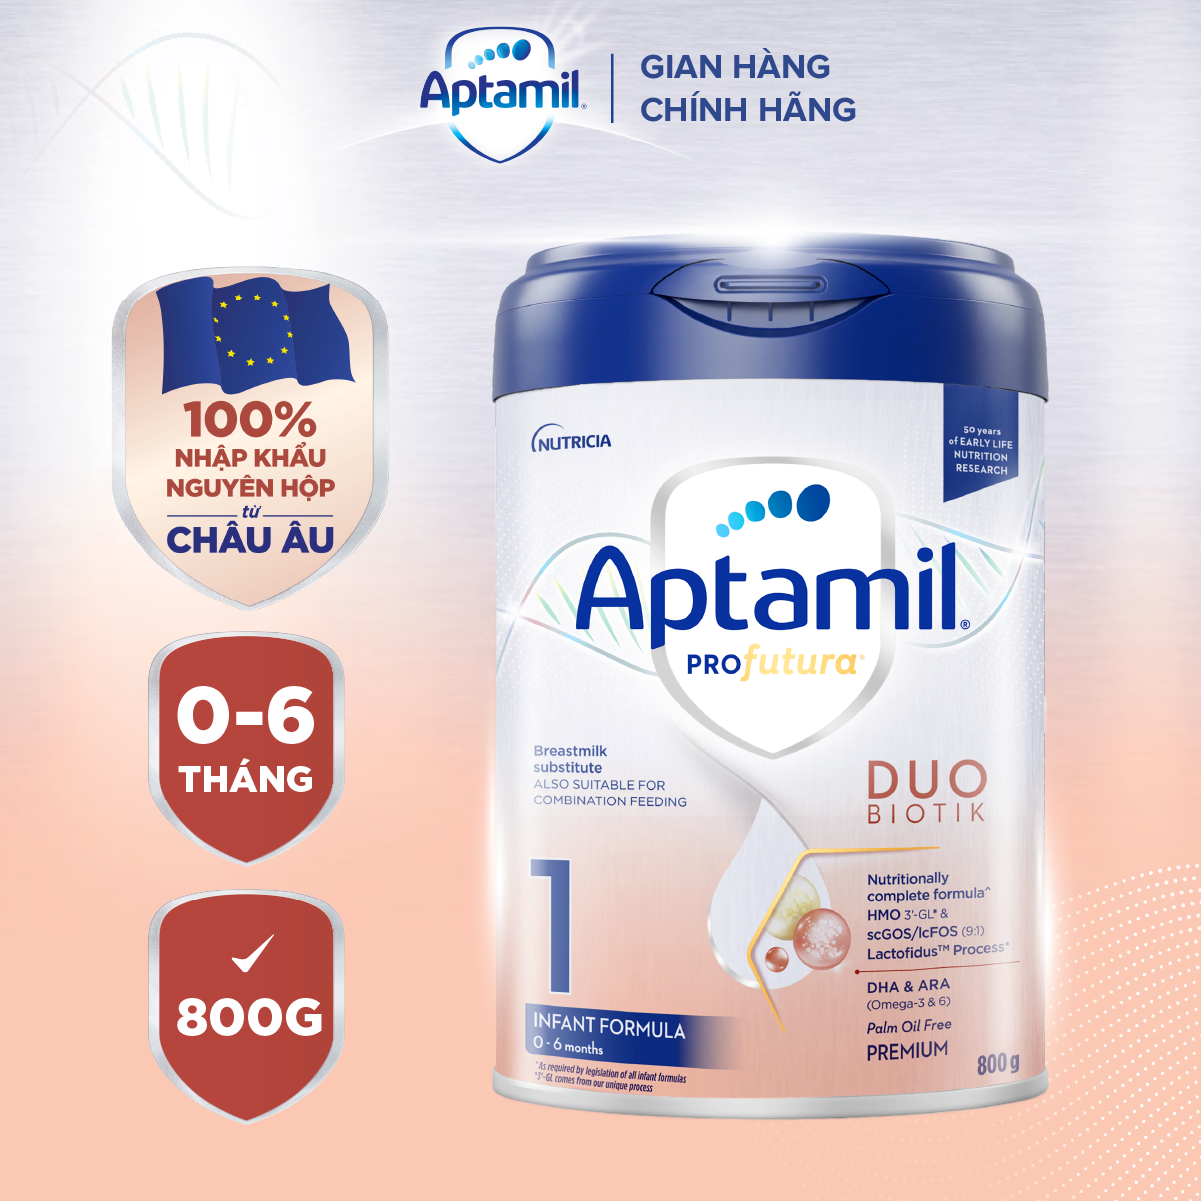 Sữa công thức Aptamil Profutura Duobiotik 1 cho bé 0-6 tháng tuổi 800g